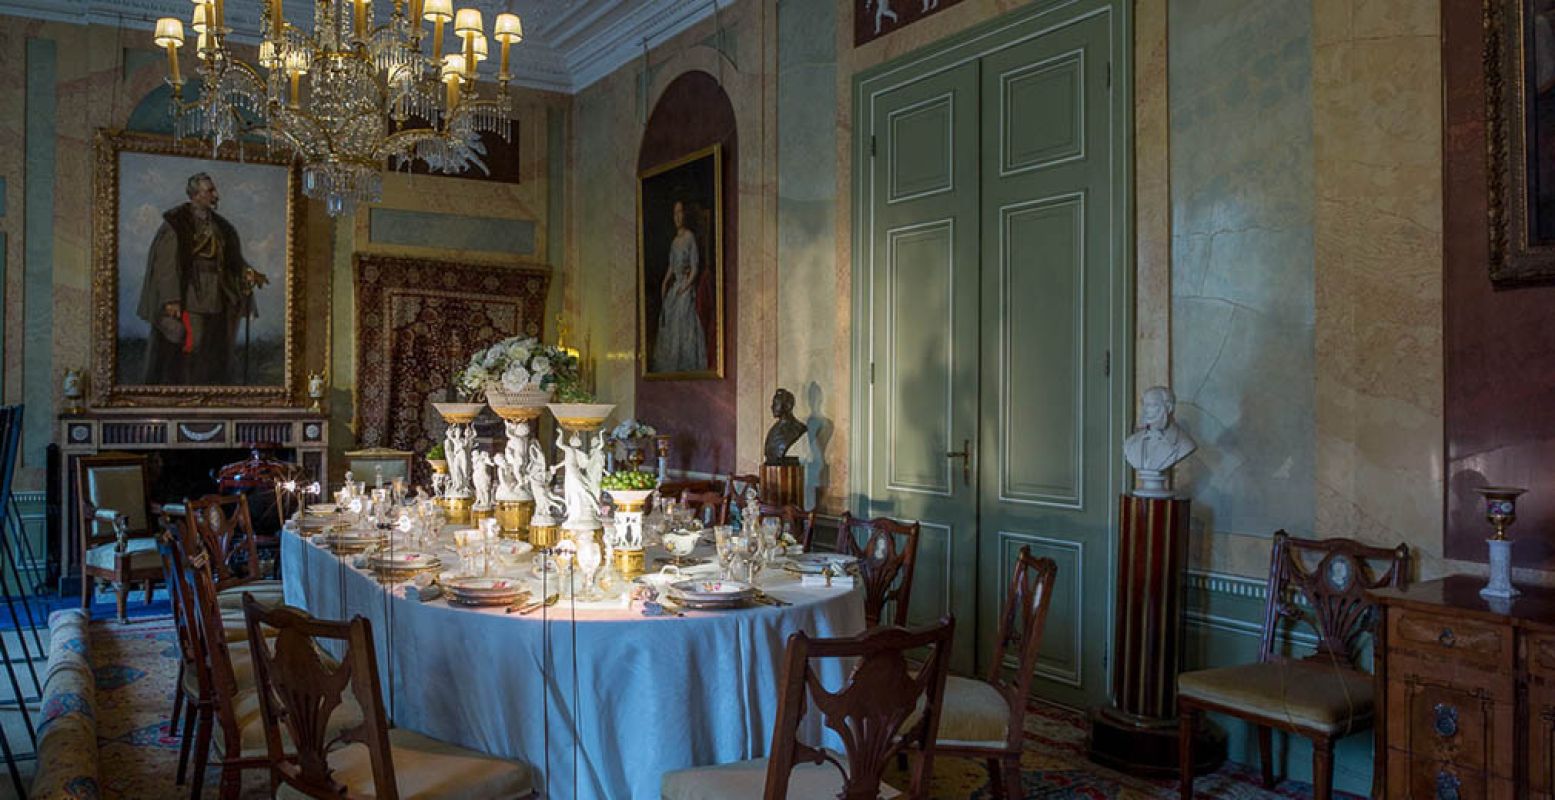 Bekijk het weelderige interieur van Huis Doorn, met kunst en dure spullen van keizer Wilhelm II. Foto: Huis Doorn.